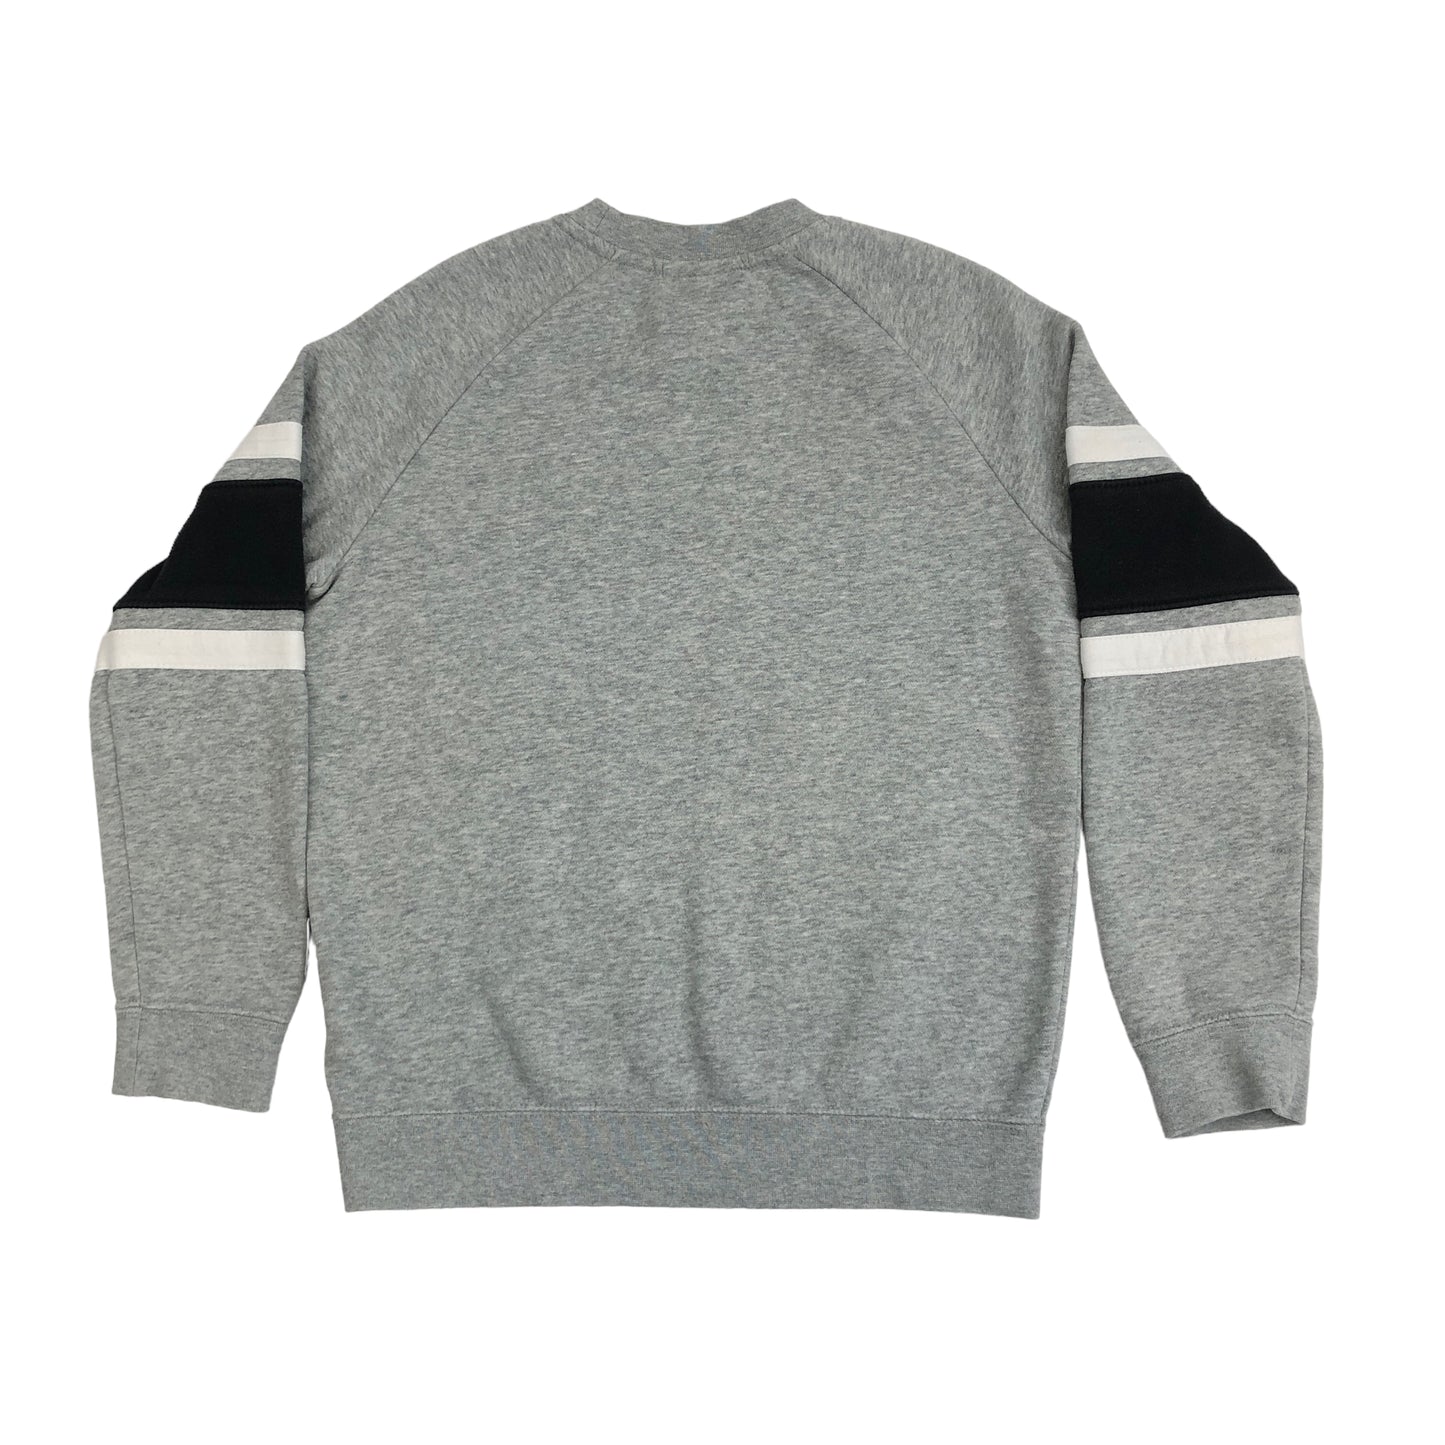 Vintage Nike Embroidered Sweatshirt (8-10yrs)